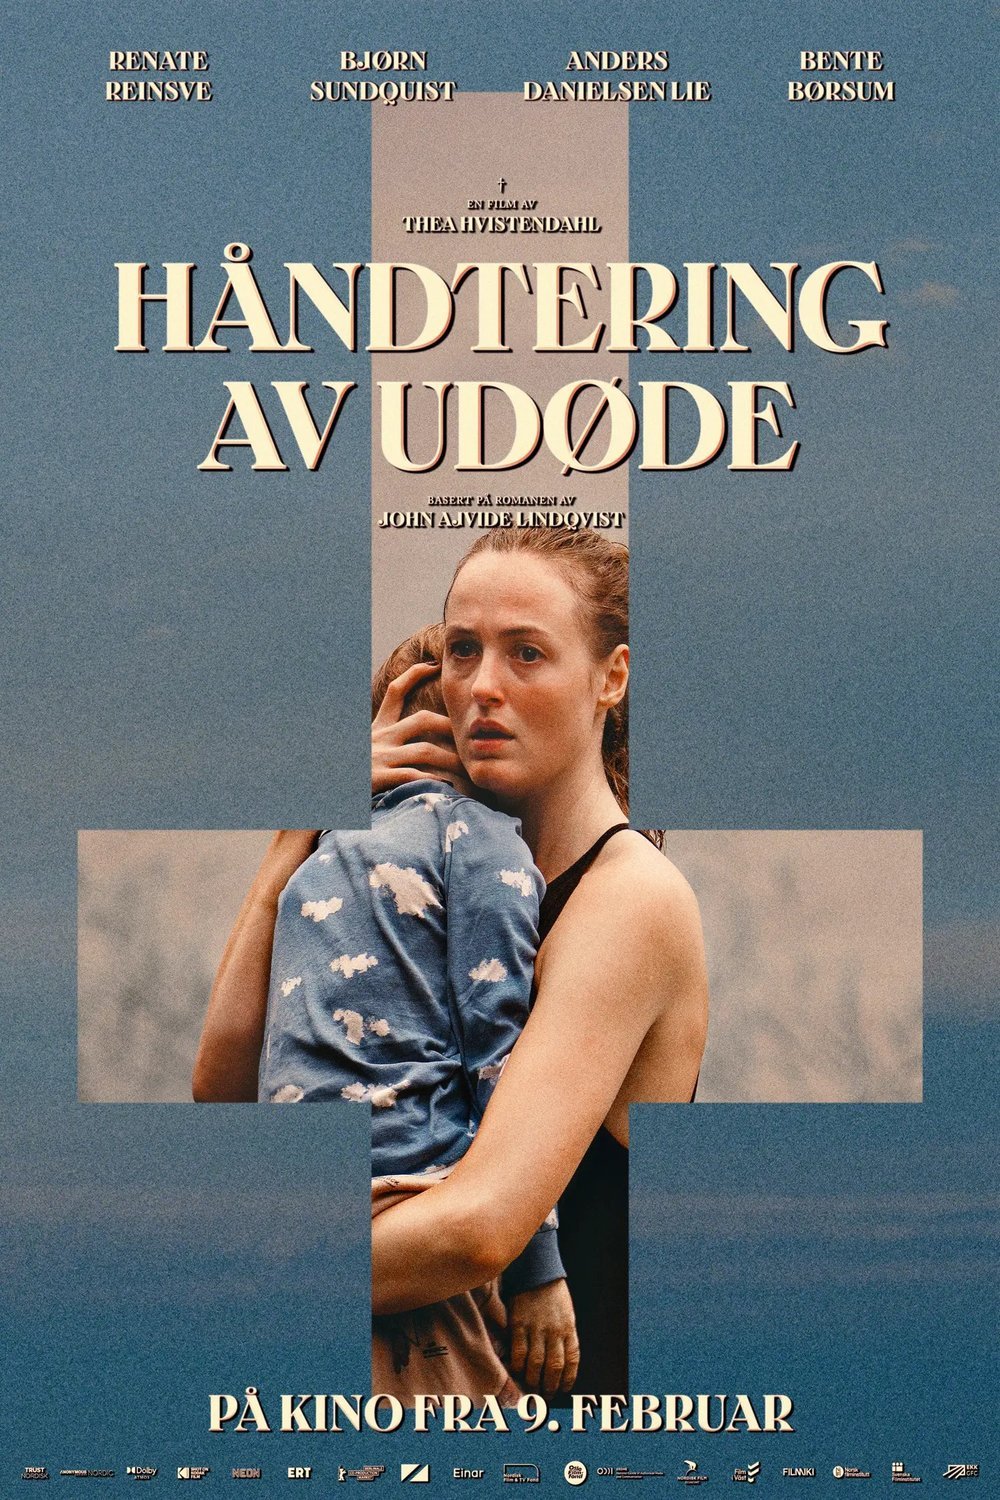 L'affiche originale du film Håndtering av udøde en norvégien